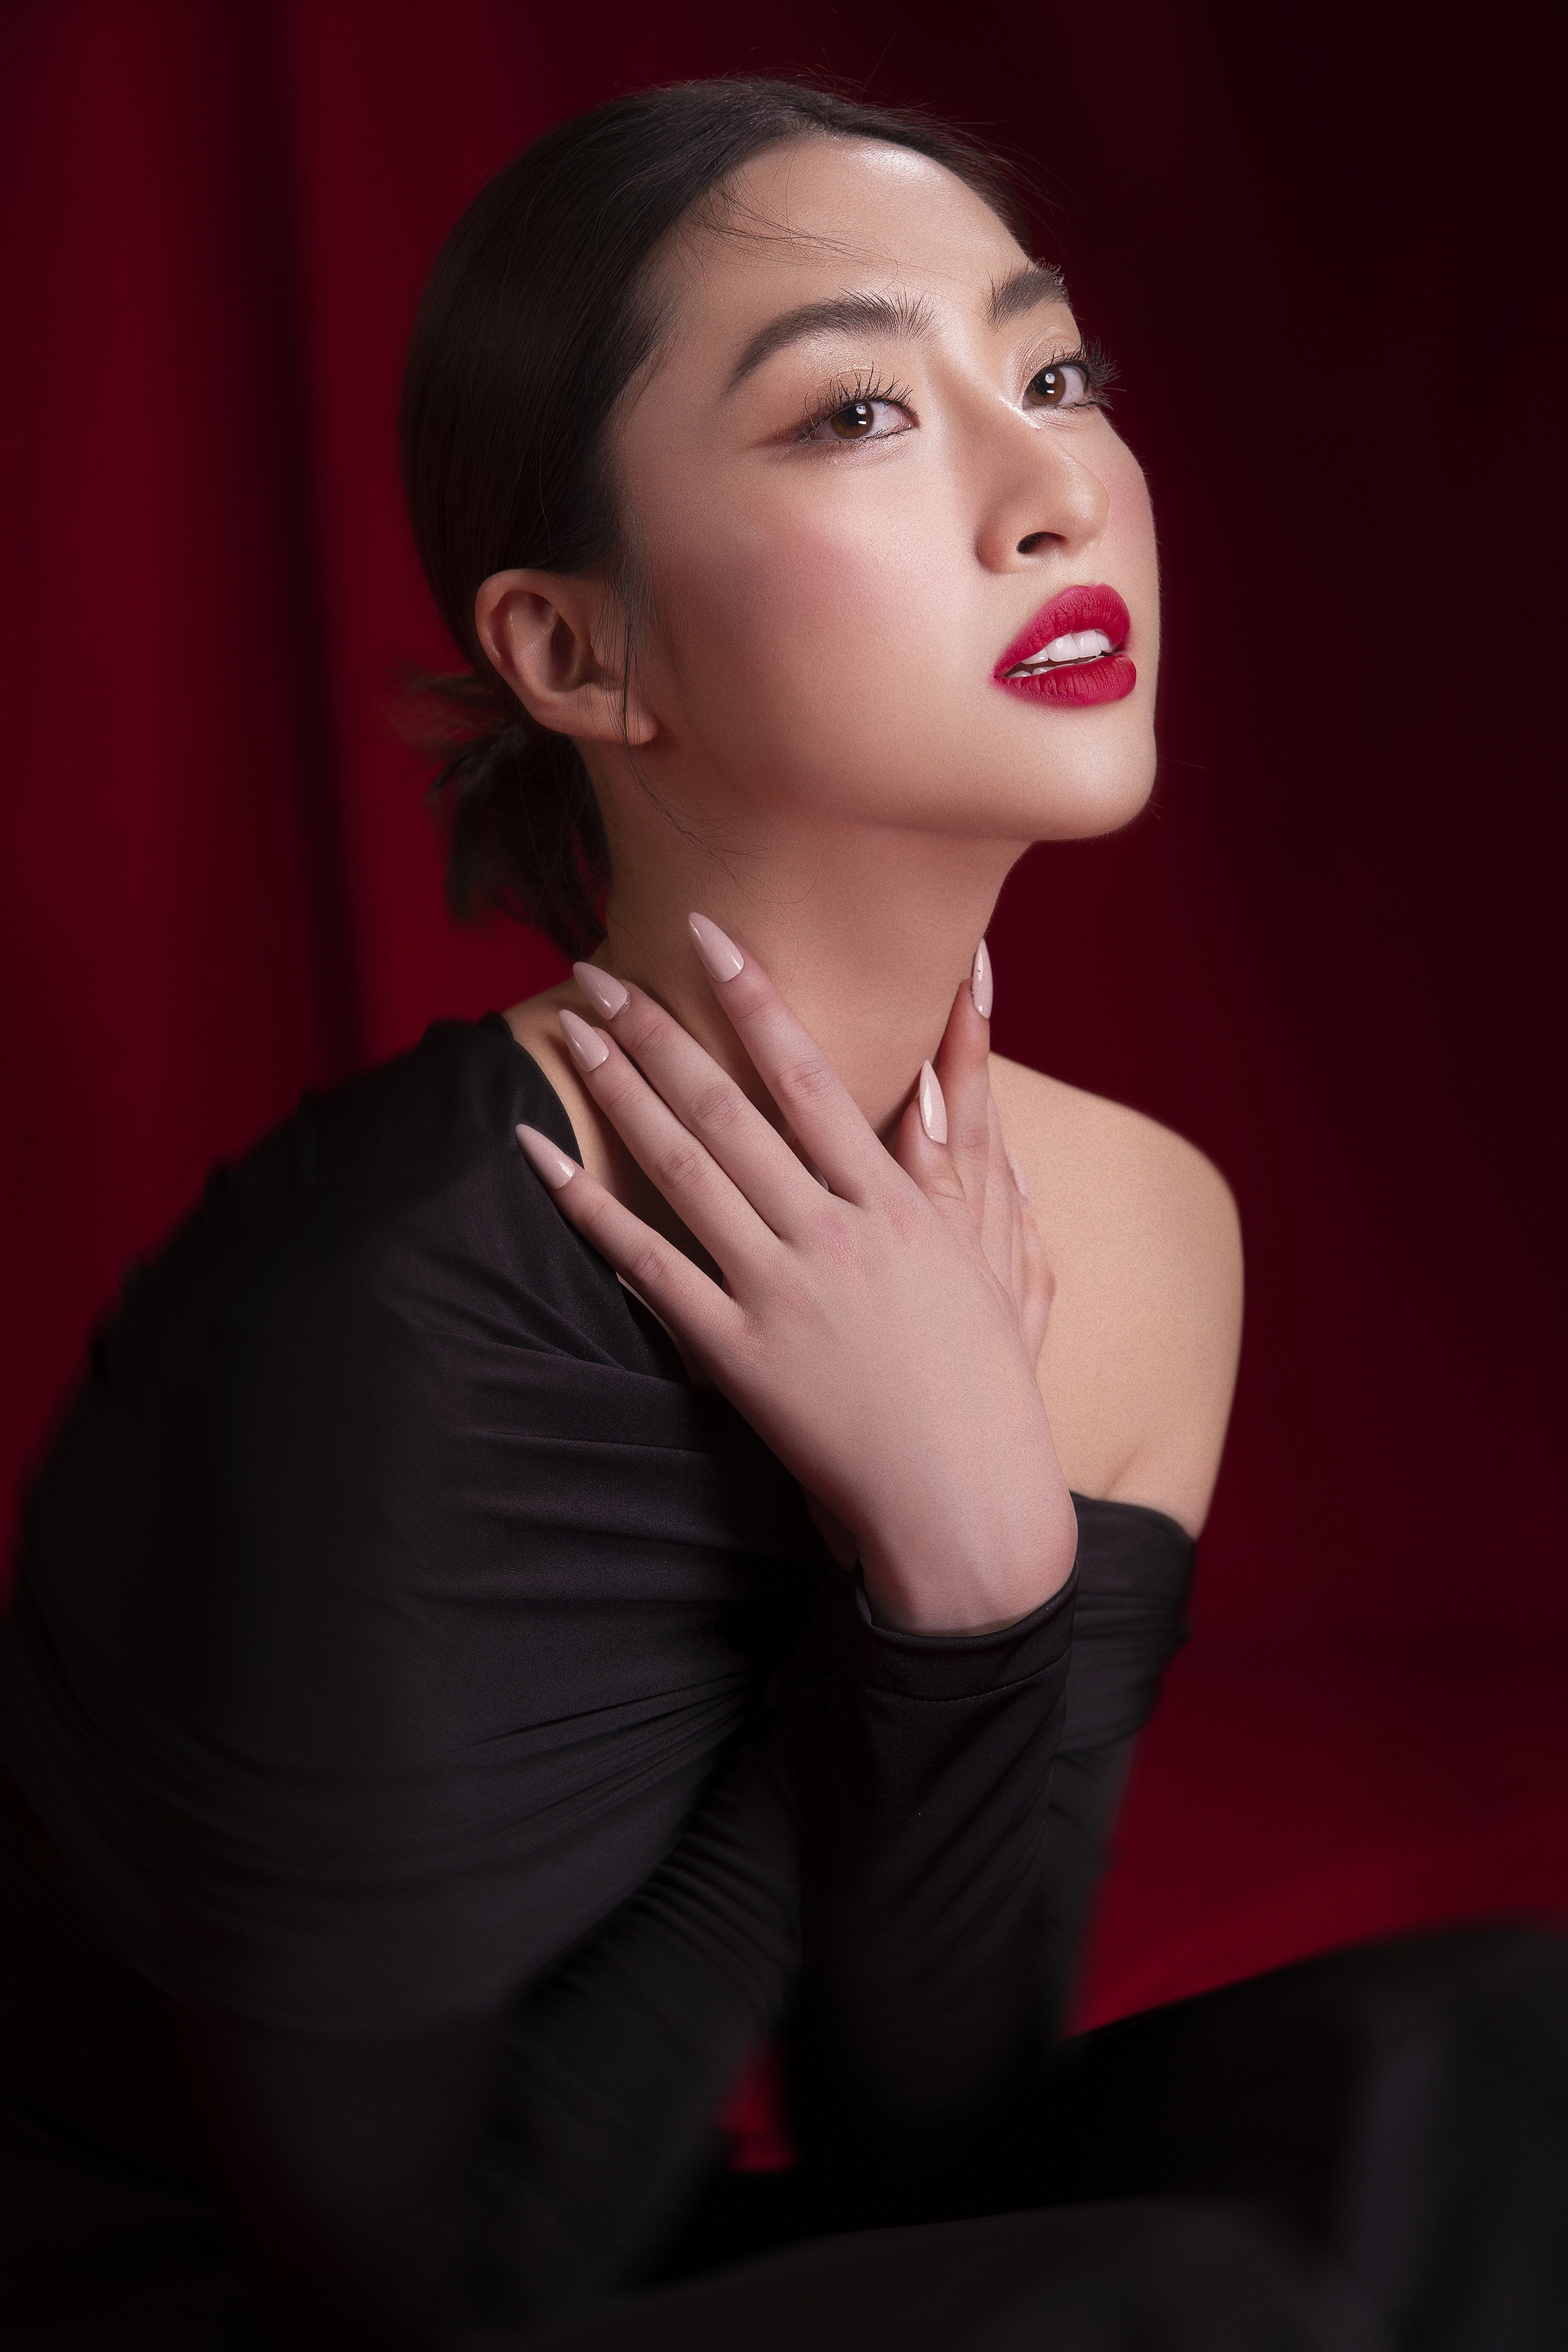 Hoa hậu Lương Thùy Linh: Tôi hướng đến hình tượng khác khi làm giảng viên  - Ảnh 6.